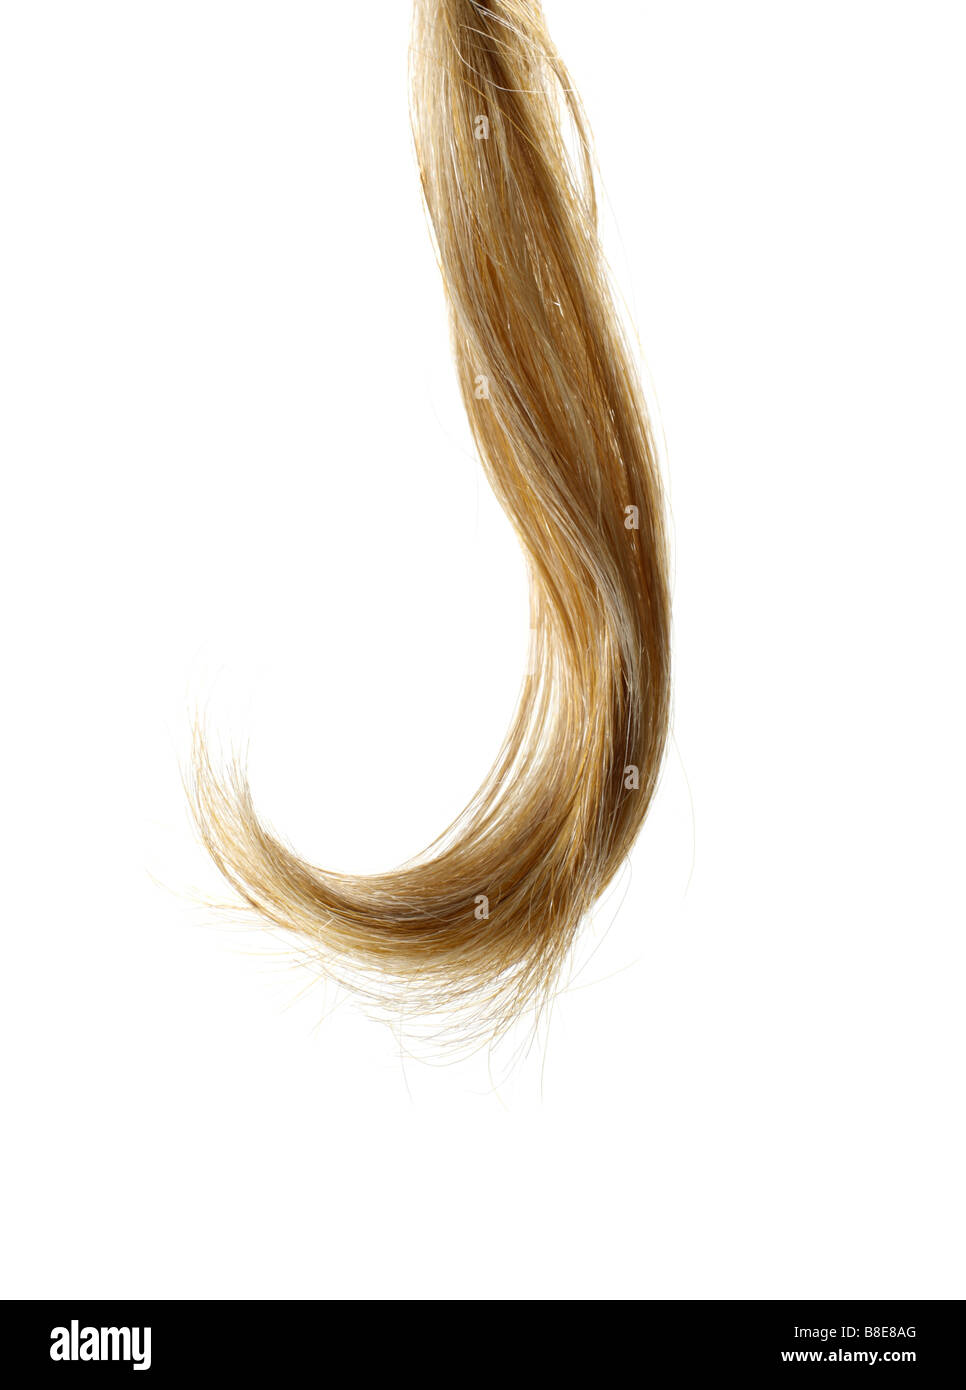 La boucle de cheveux blonds Banque D'Images